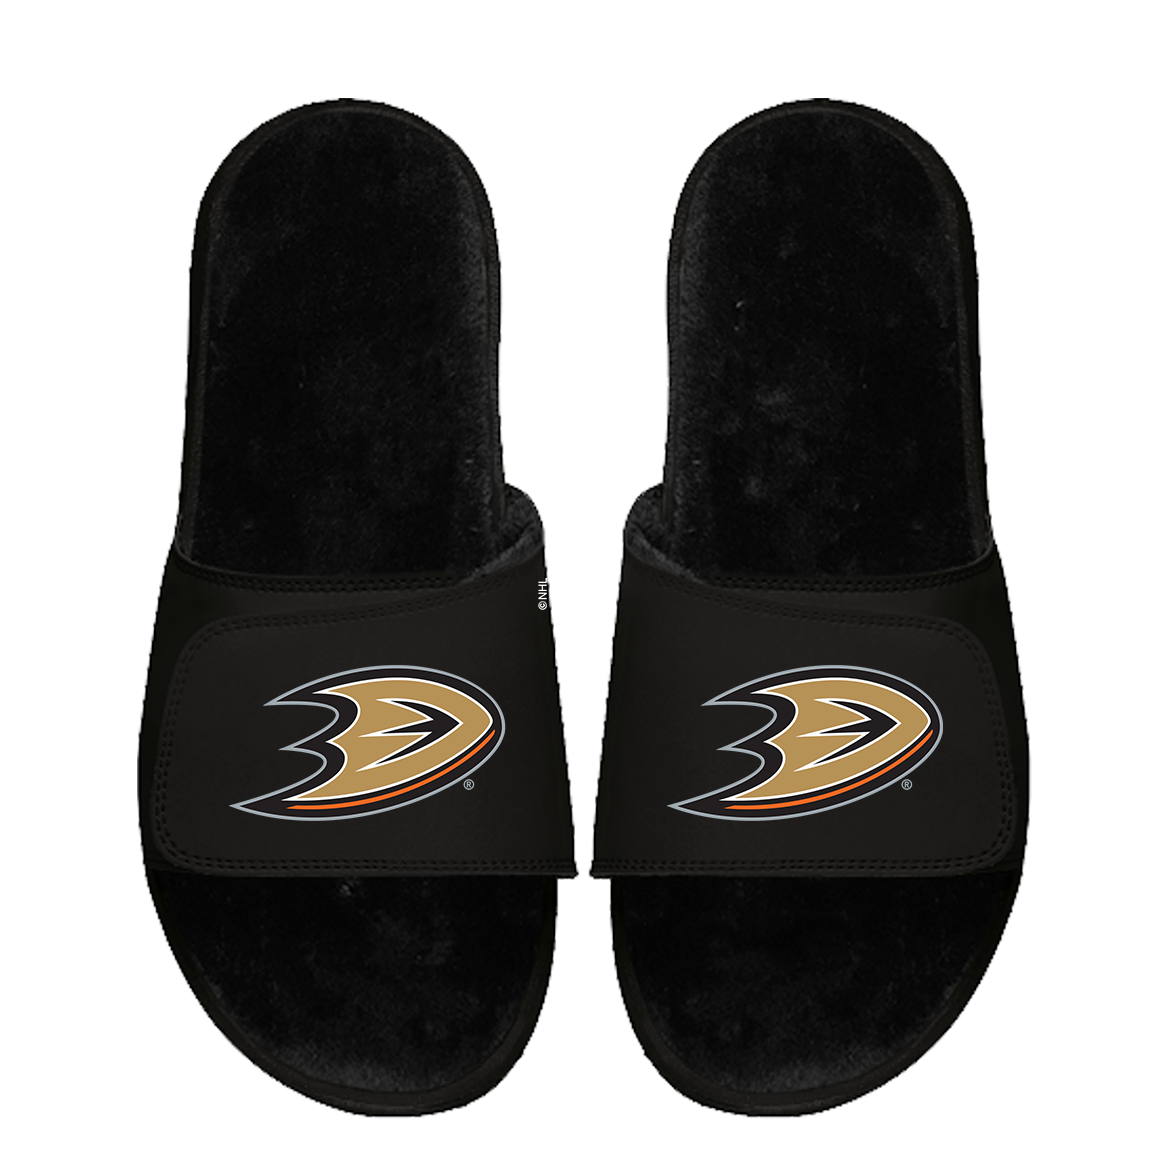 Anaheim Ducks Primary Black Fur